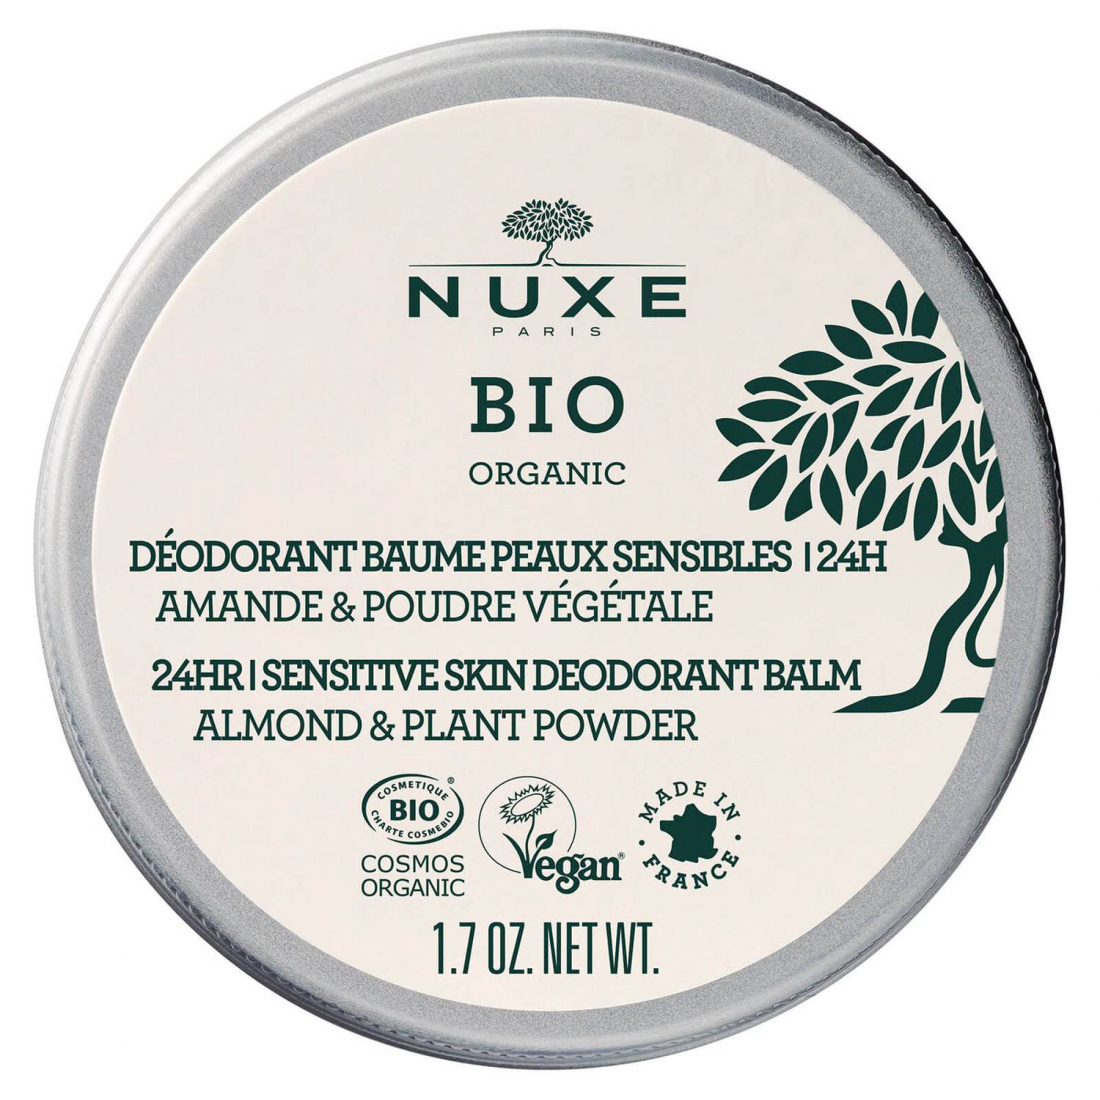 'Déodorant Baume Peaux Sensibles 24H, Nuxe Bio' - 50 g